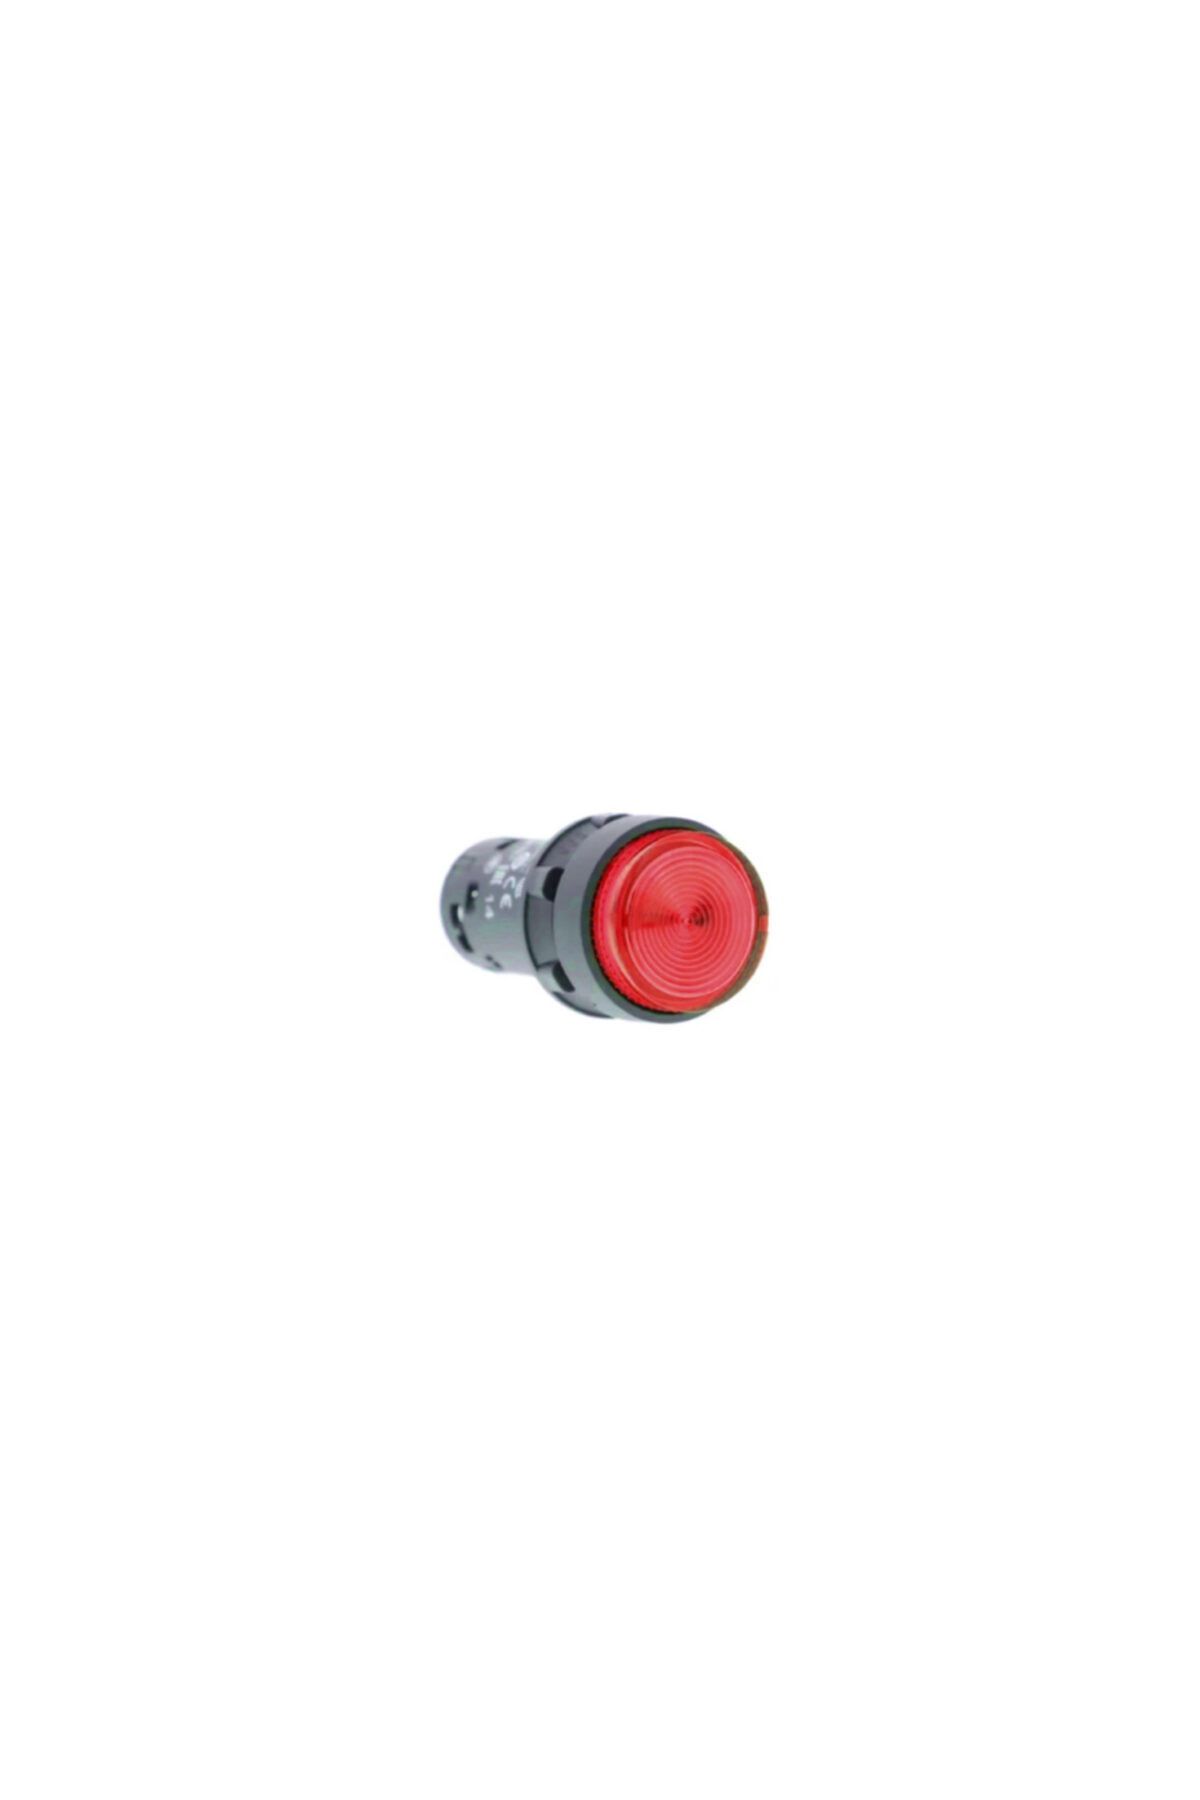 Schneider Kırmızı Işıklı Stop Buton 1nk Yaylı Tip 24v Ledli 22mm Monoblok